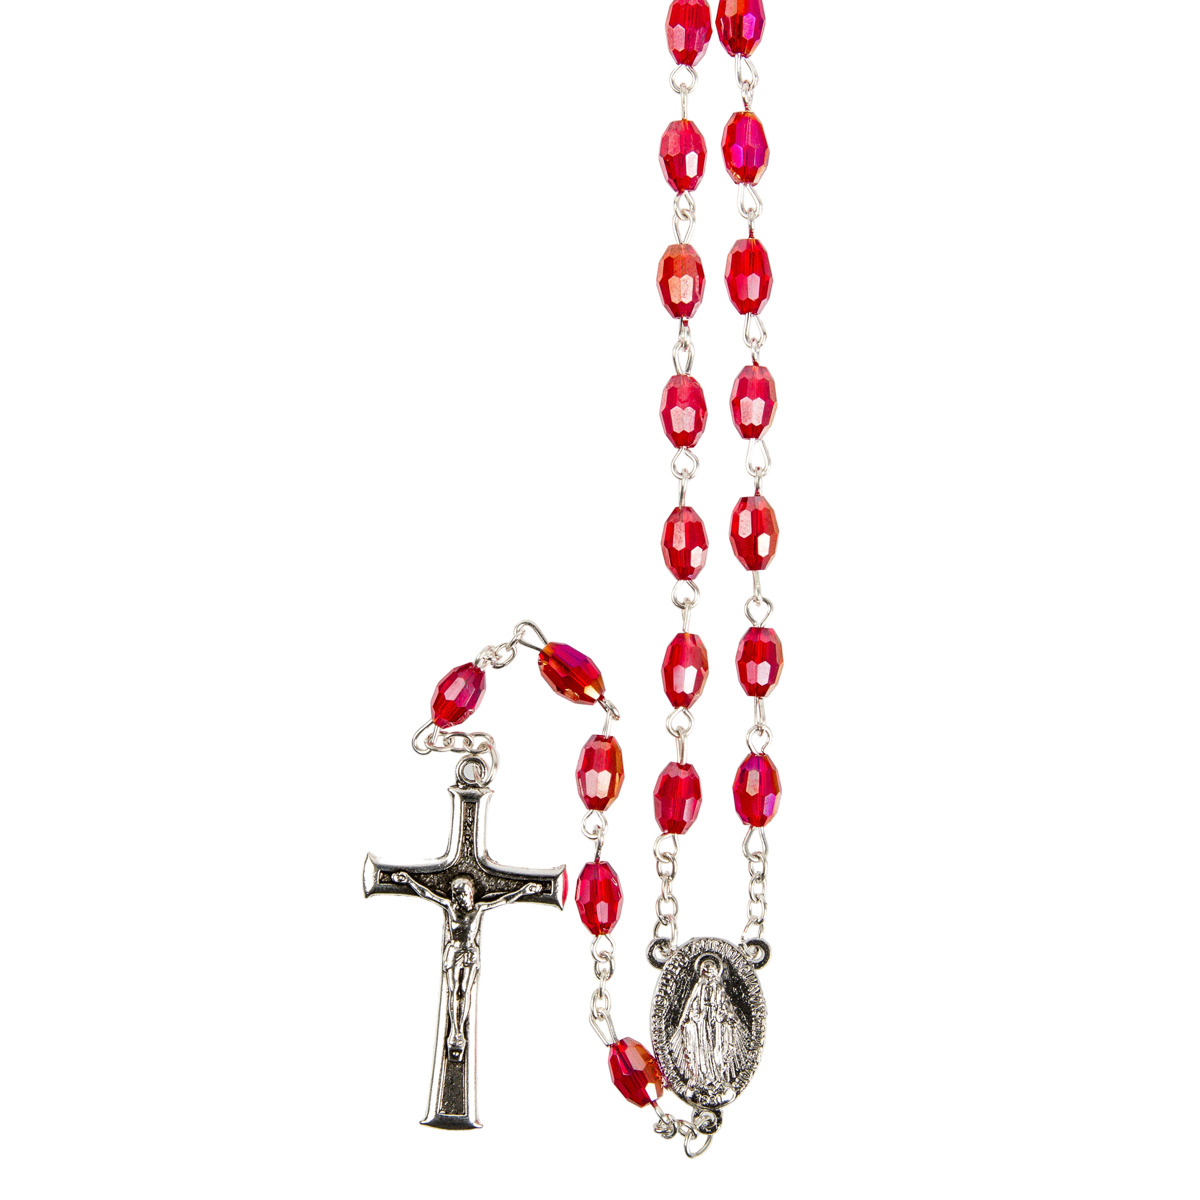 Chapelet grains semi-cristal, Ø 7 mm, chaîne couleur argentée, longueur au cœur 40 cm, croix avec Christ.